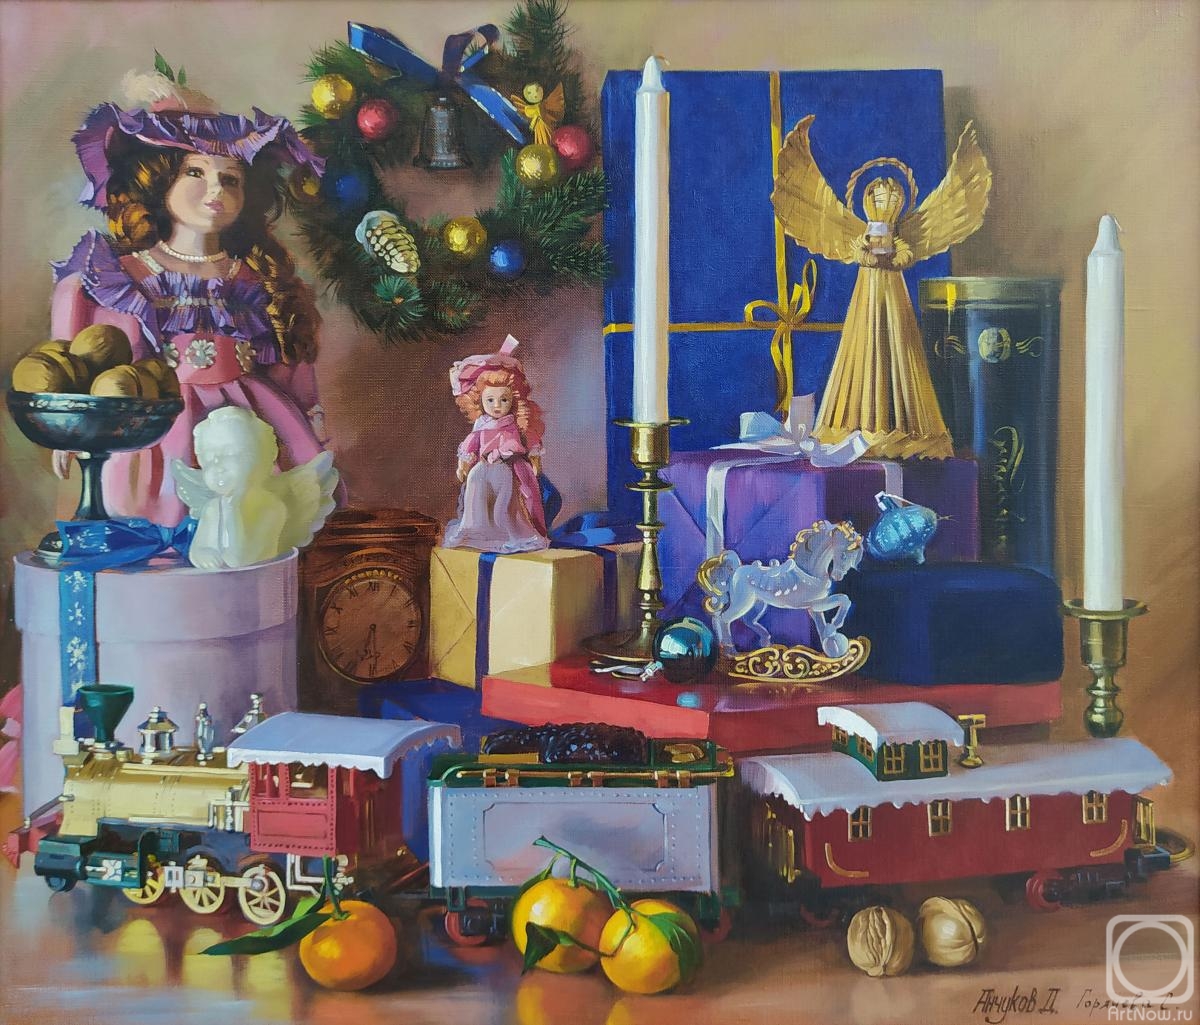 Anchukov Dmitri. Christmas gifts